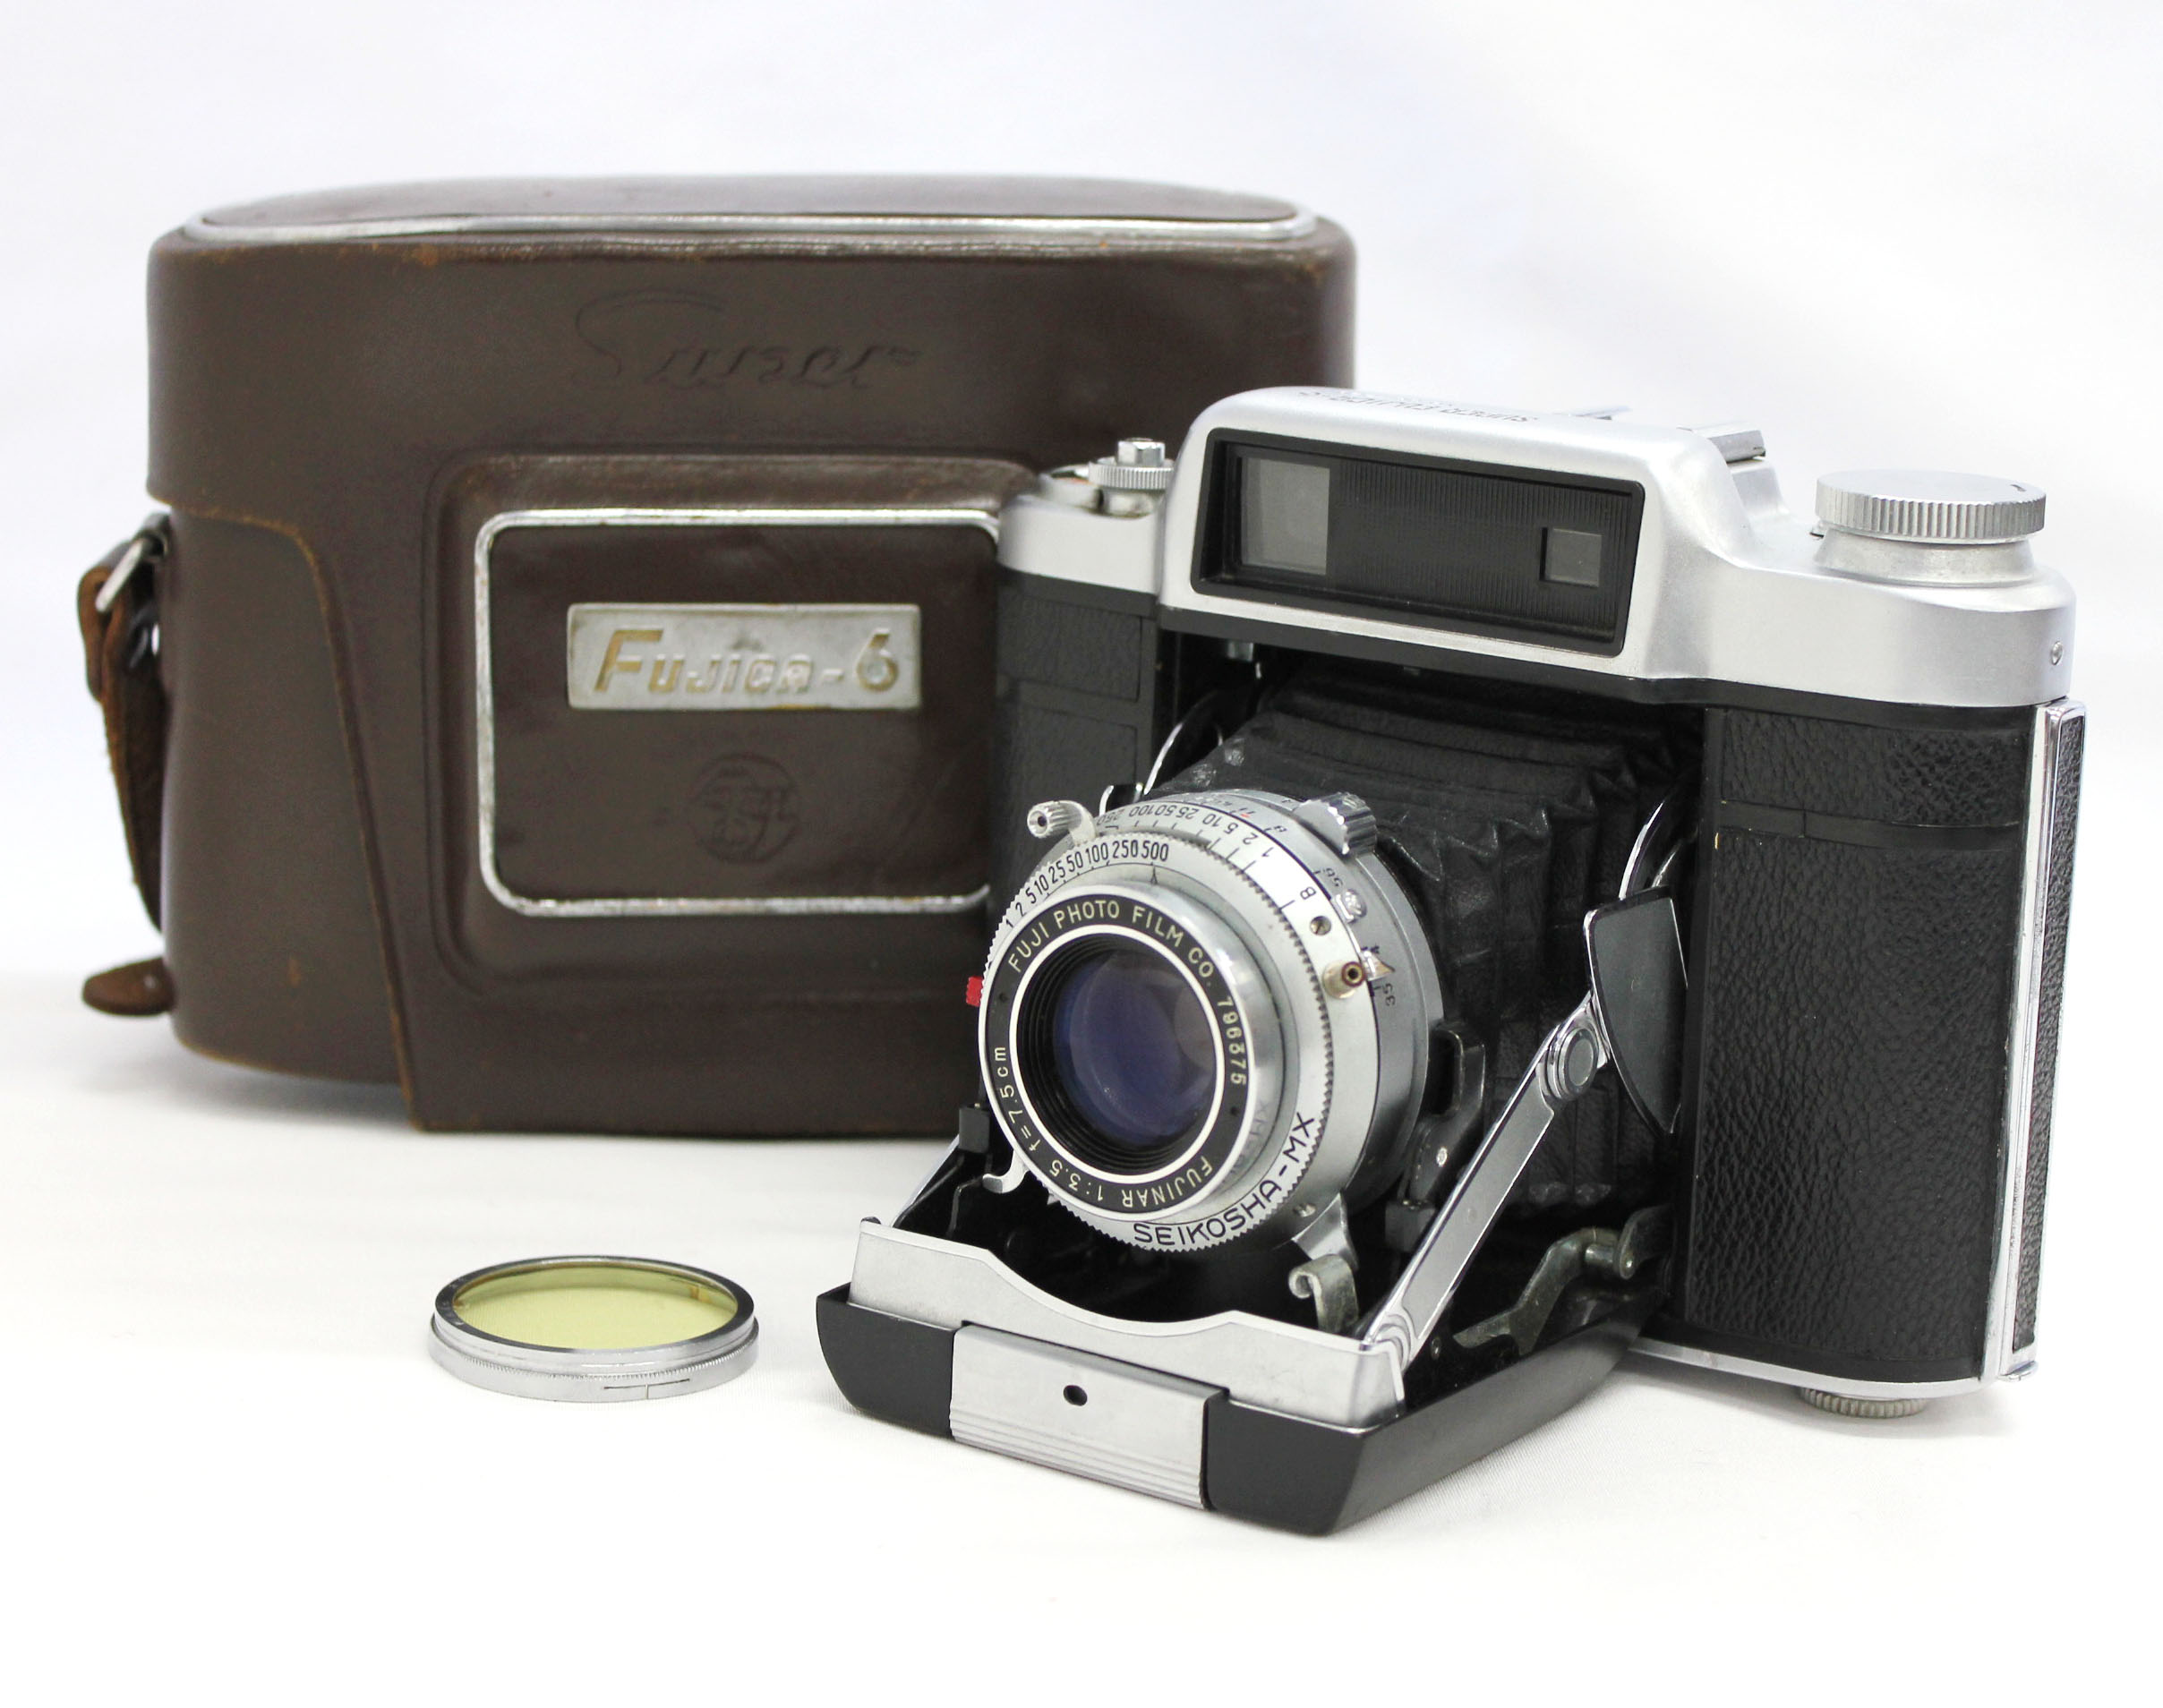  Fuji Super Fujica-6 Six 6x6 Medium Format Film Camera with Fujinar 75mm F/3.5 from Japan Photo 0